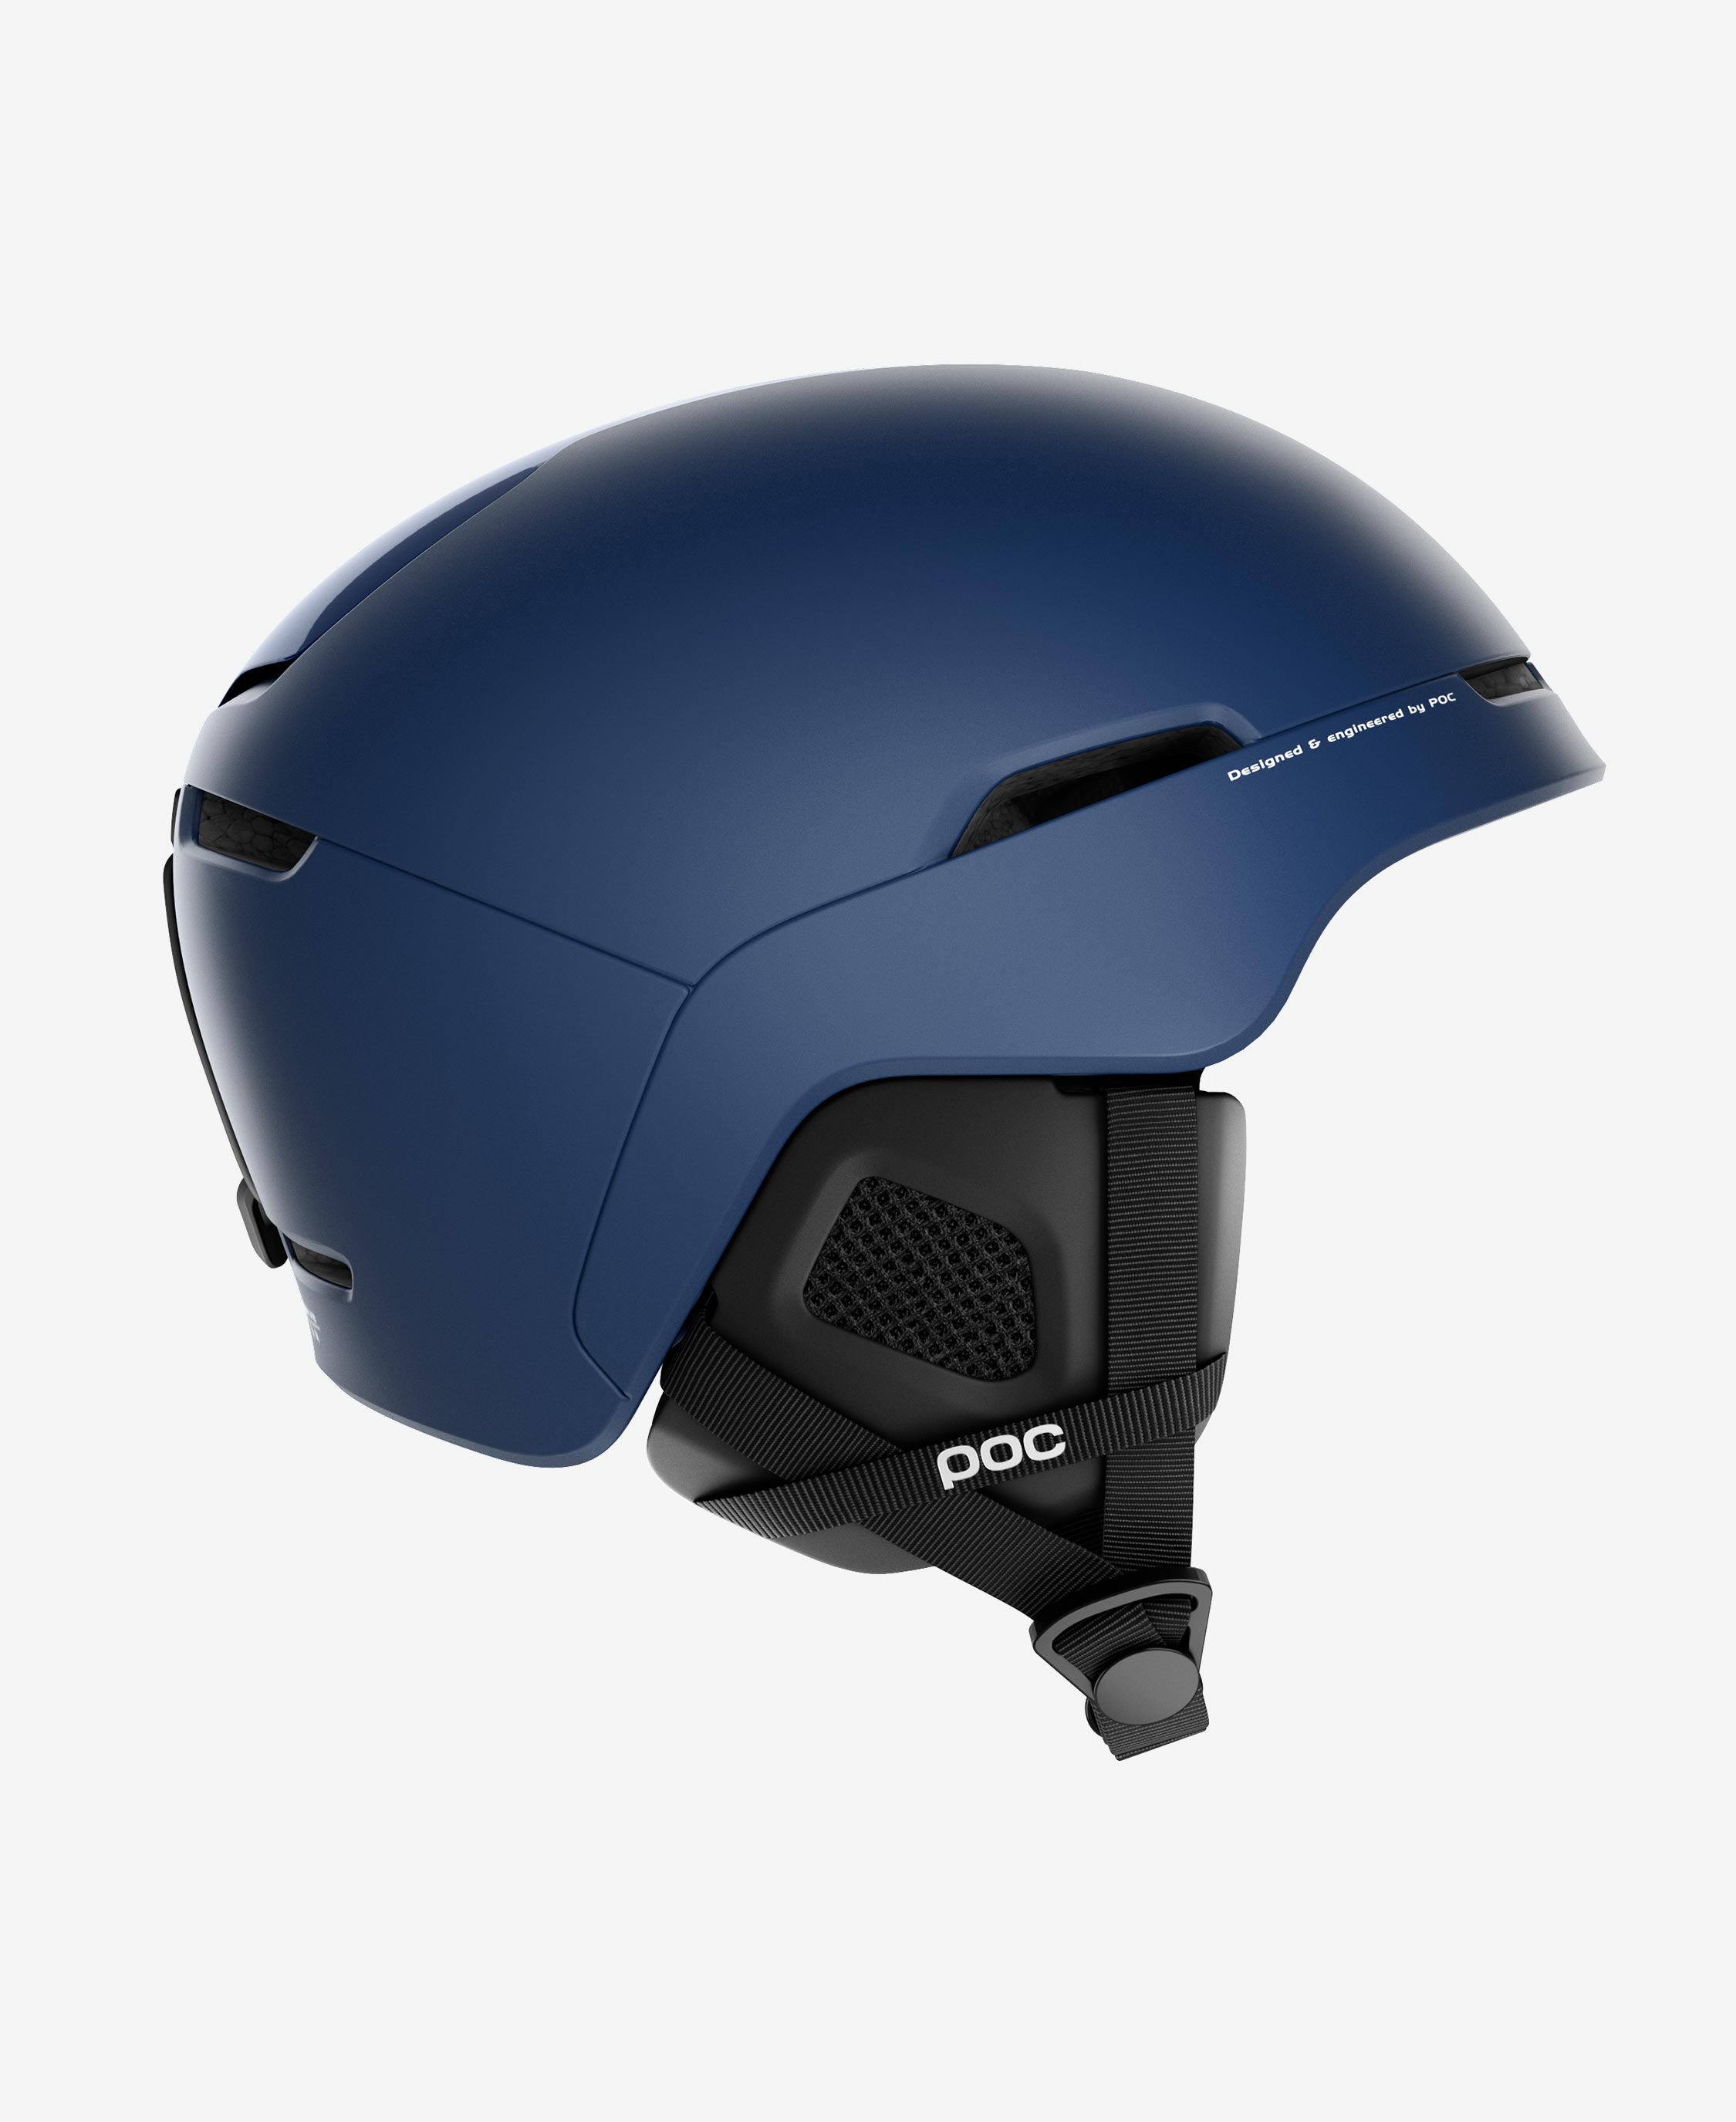 Ski Helmet - Obex Spin | POC | BOTËGHES LAGAZOI